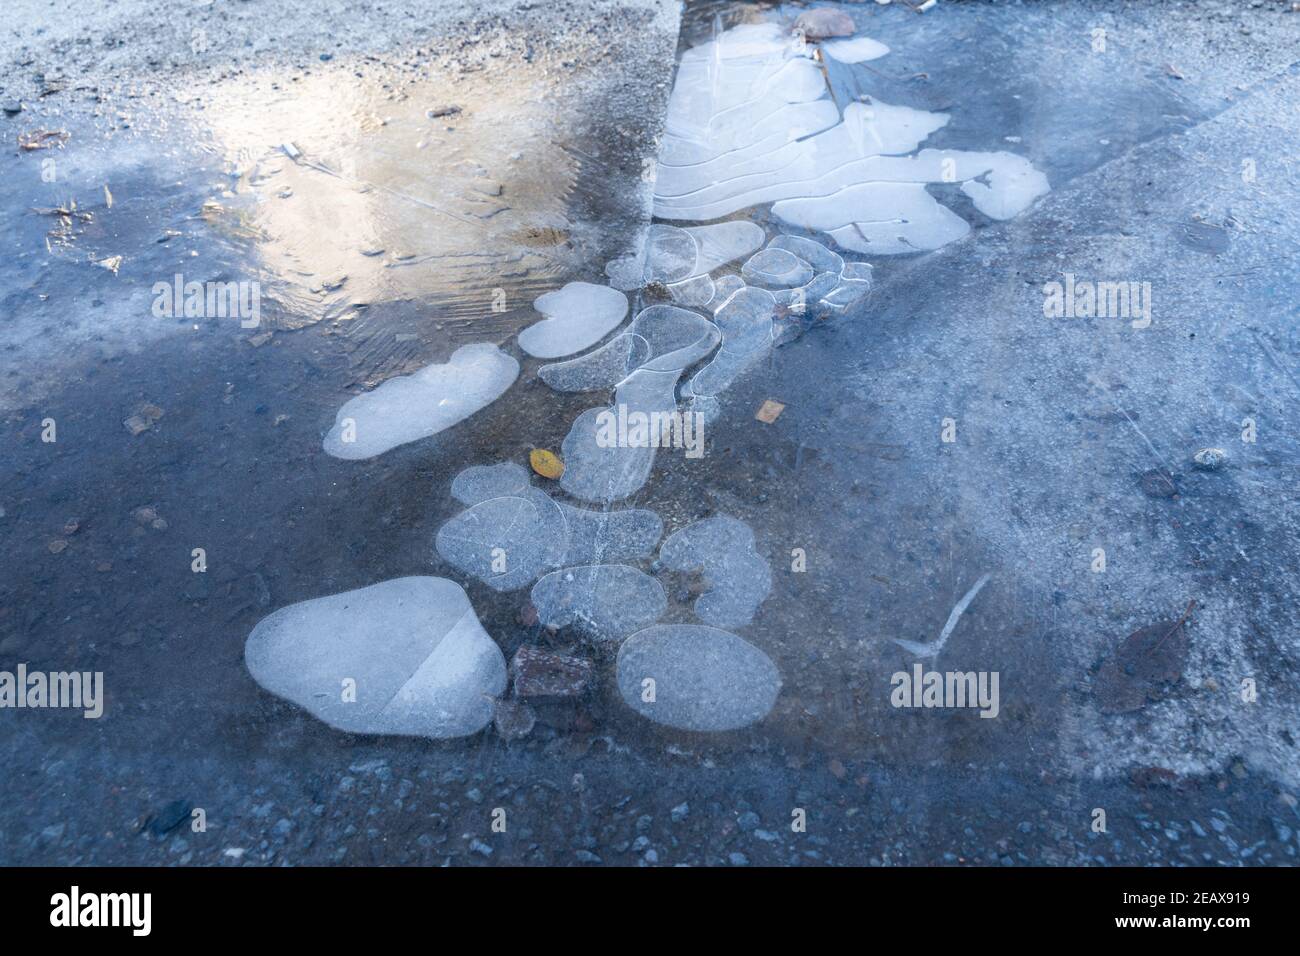 Gefrorene Pfütze auf dem Boden mit weißen Luftblasen im Wasser. Rutschiger Frost auf dem Bürgersteig in der Stadt. Stockfoto